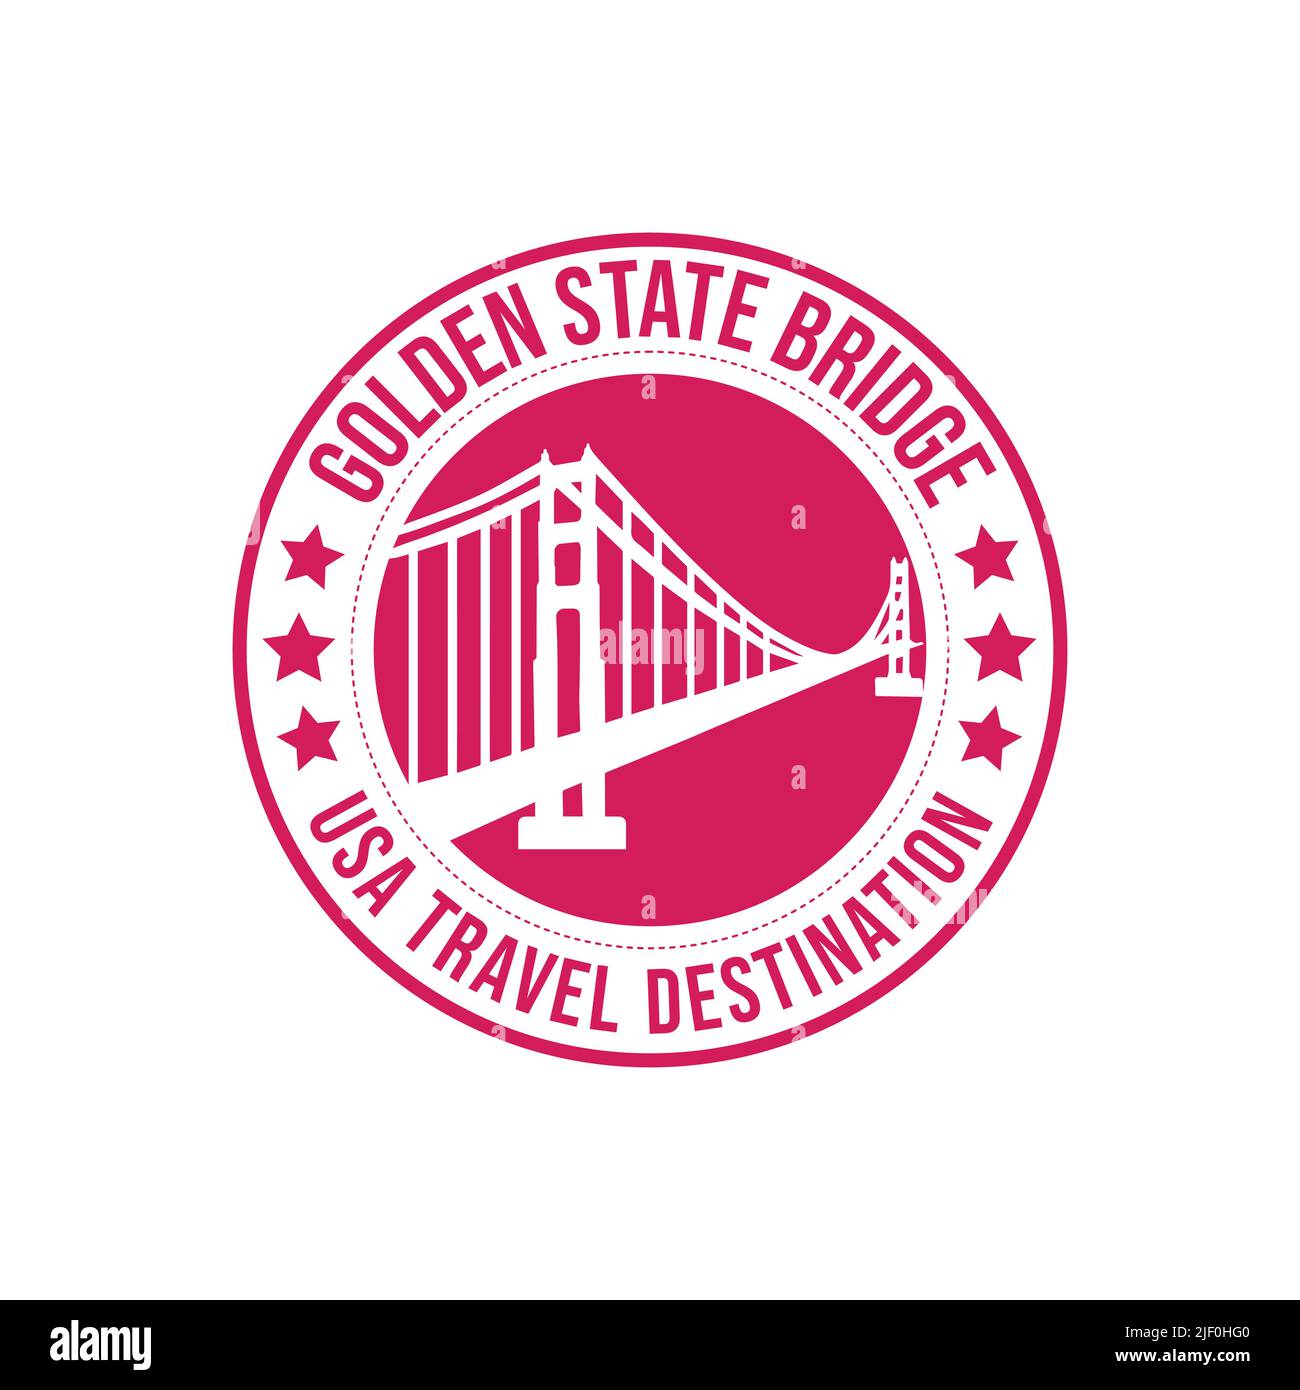 Sello de goma con el texto Golden State Bridge travel destination escrito dentro del sello. América histórico puente arquitectura destino de viaje Ilustración del Vector